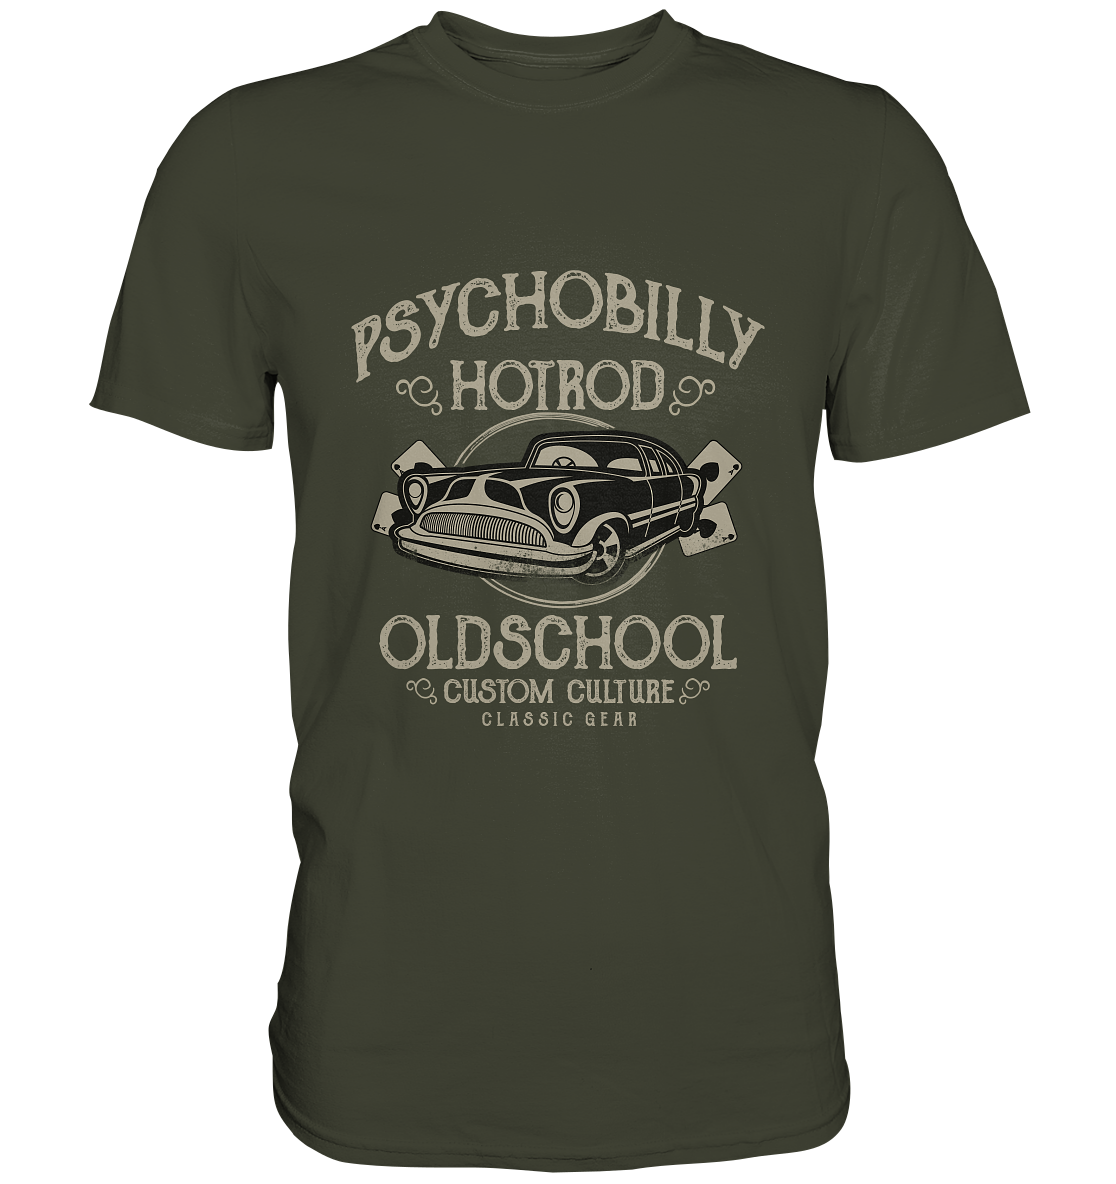 Psychobilly Hotrod Old School. Vintage Retro - Premium Shirt